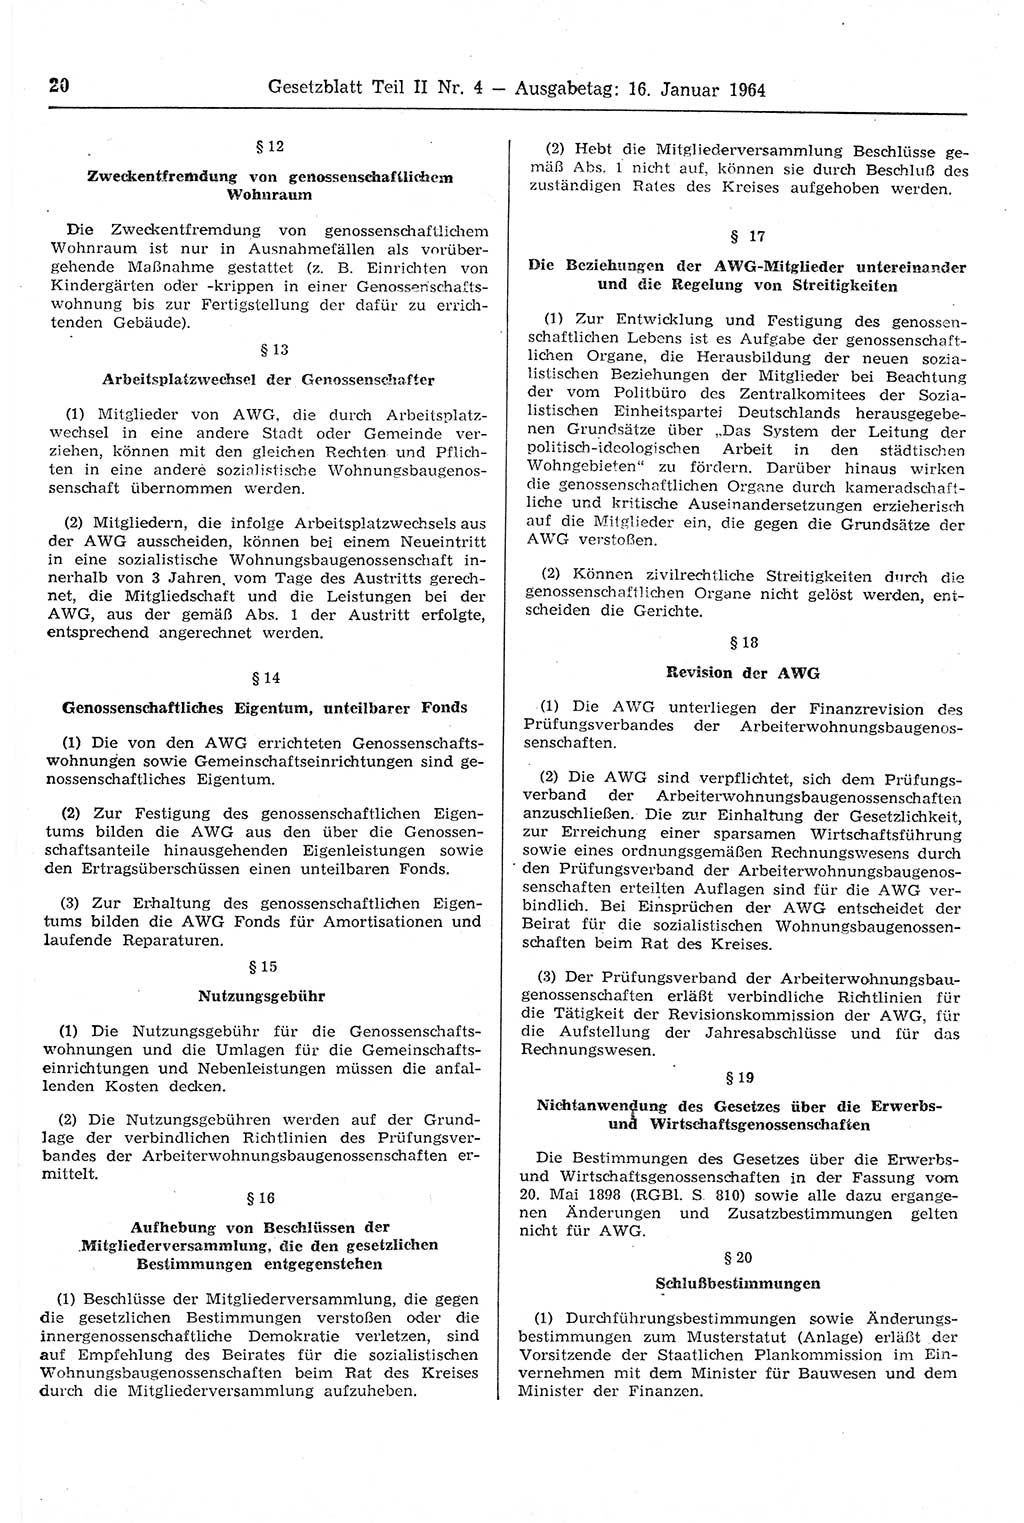 Gesetzblatt (GBl.) der Deutschen Demokratischen Republik (DDR) Teil ⅠⅠ 1964, Seite 20 (GBl. DDR ⅠⅠ 1964, S. 20)